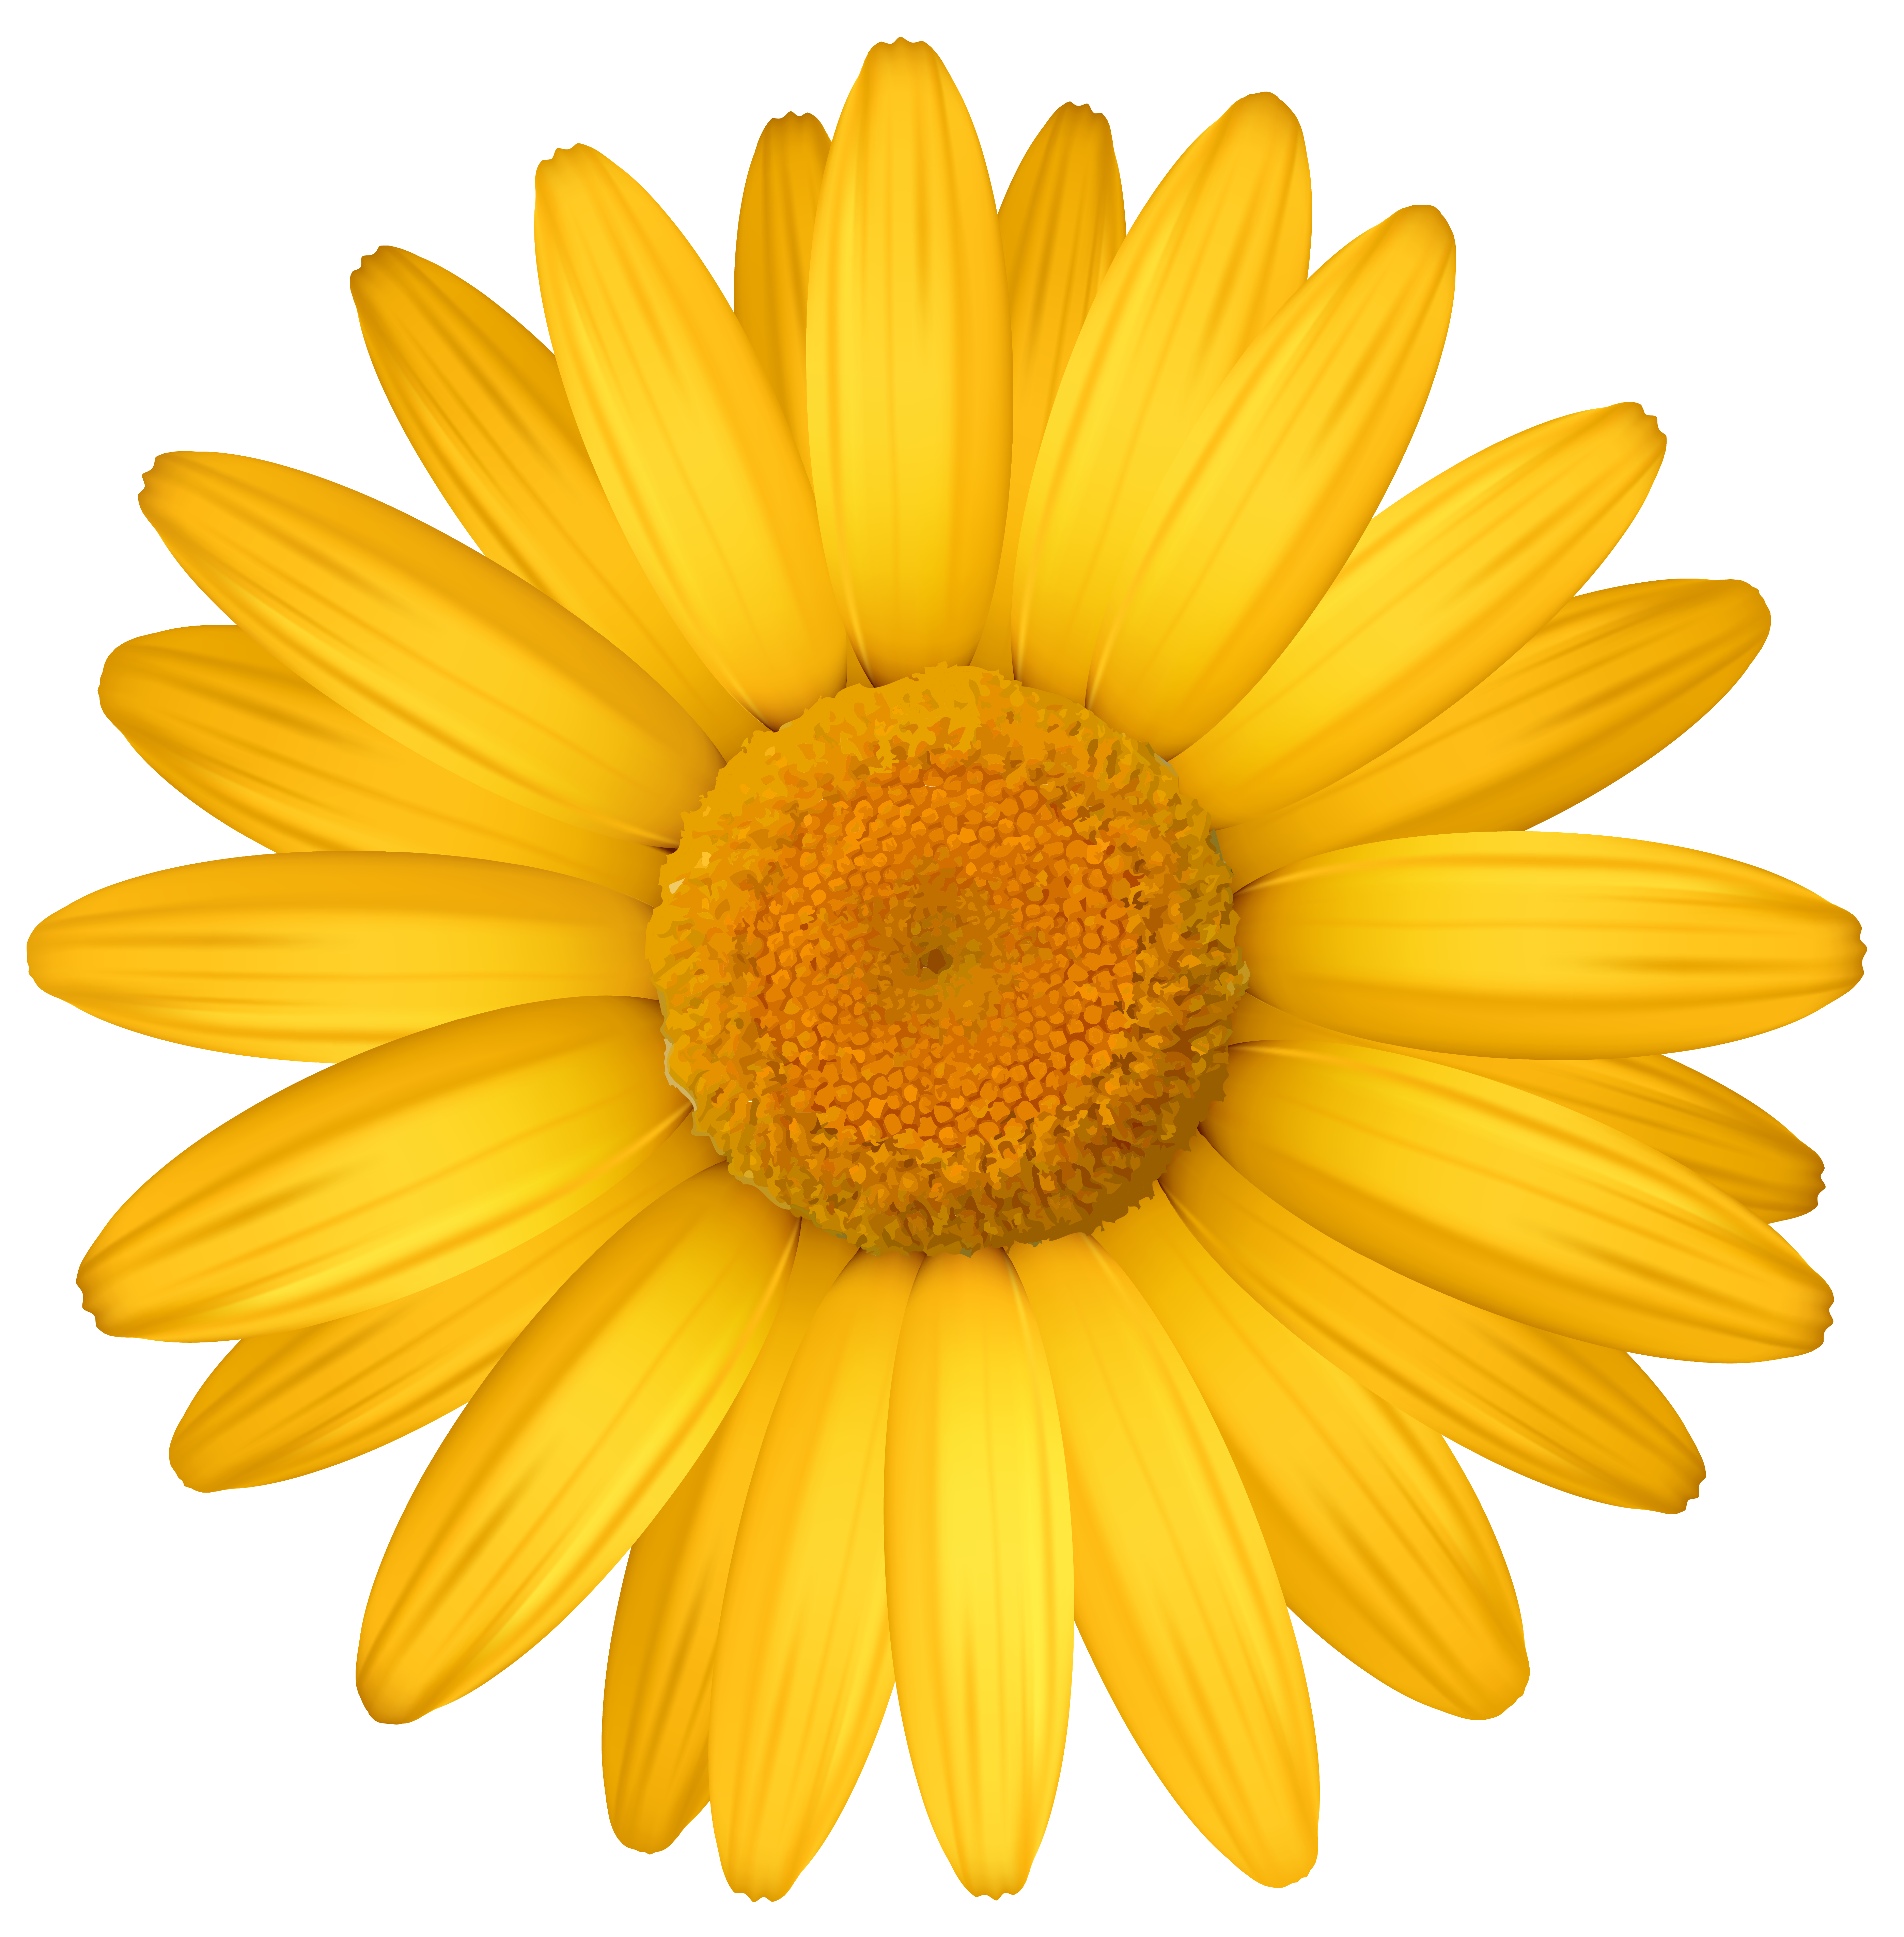 Yellow daisy clipart image